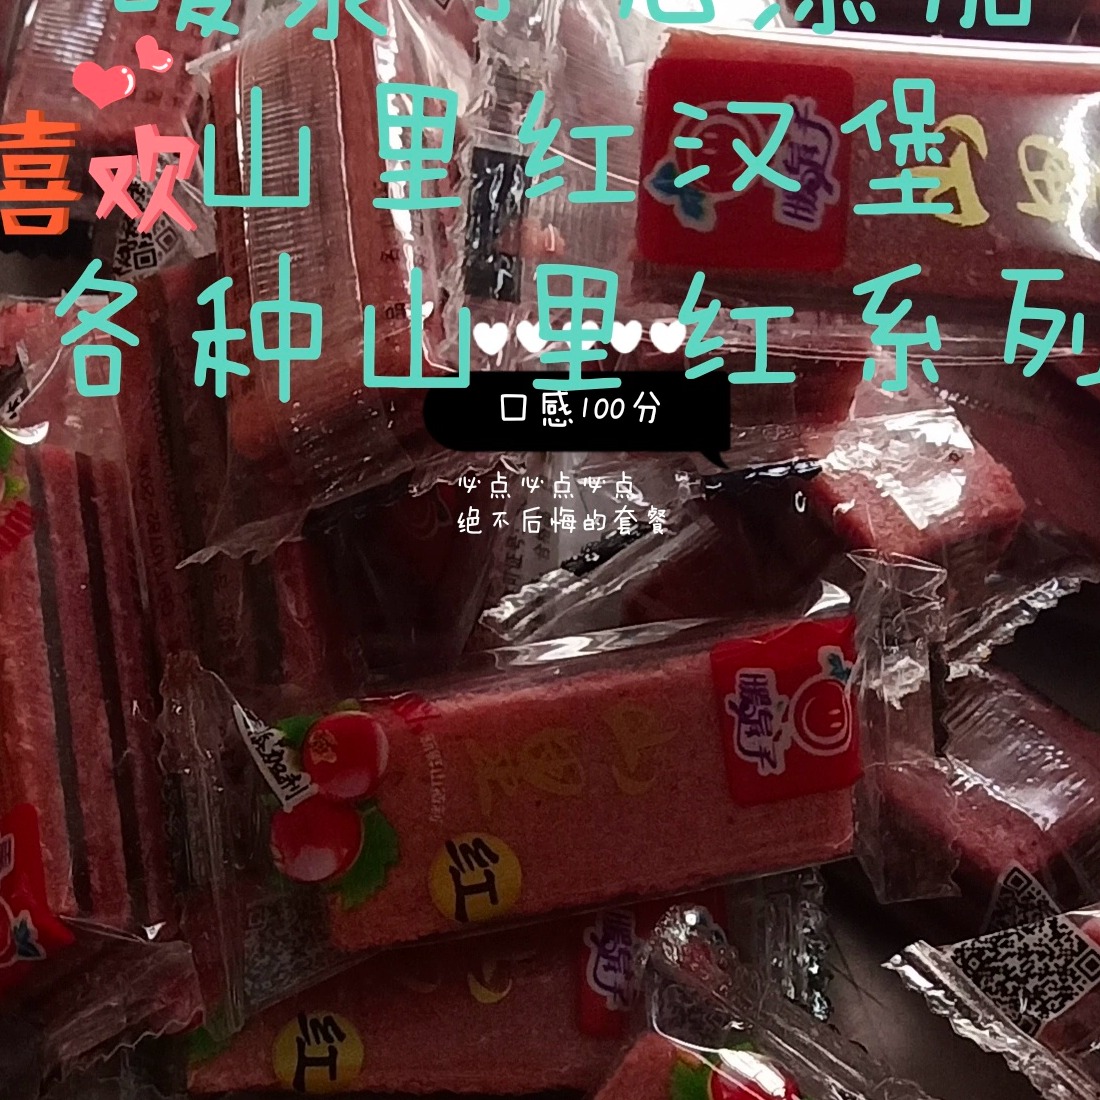 辽宁暖泉子特产无添加山楂片山里红系列厂家发货儿童零食散装包邮